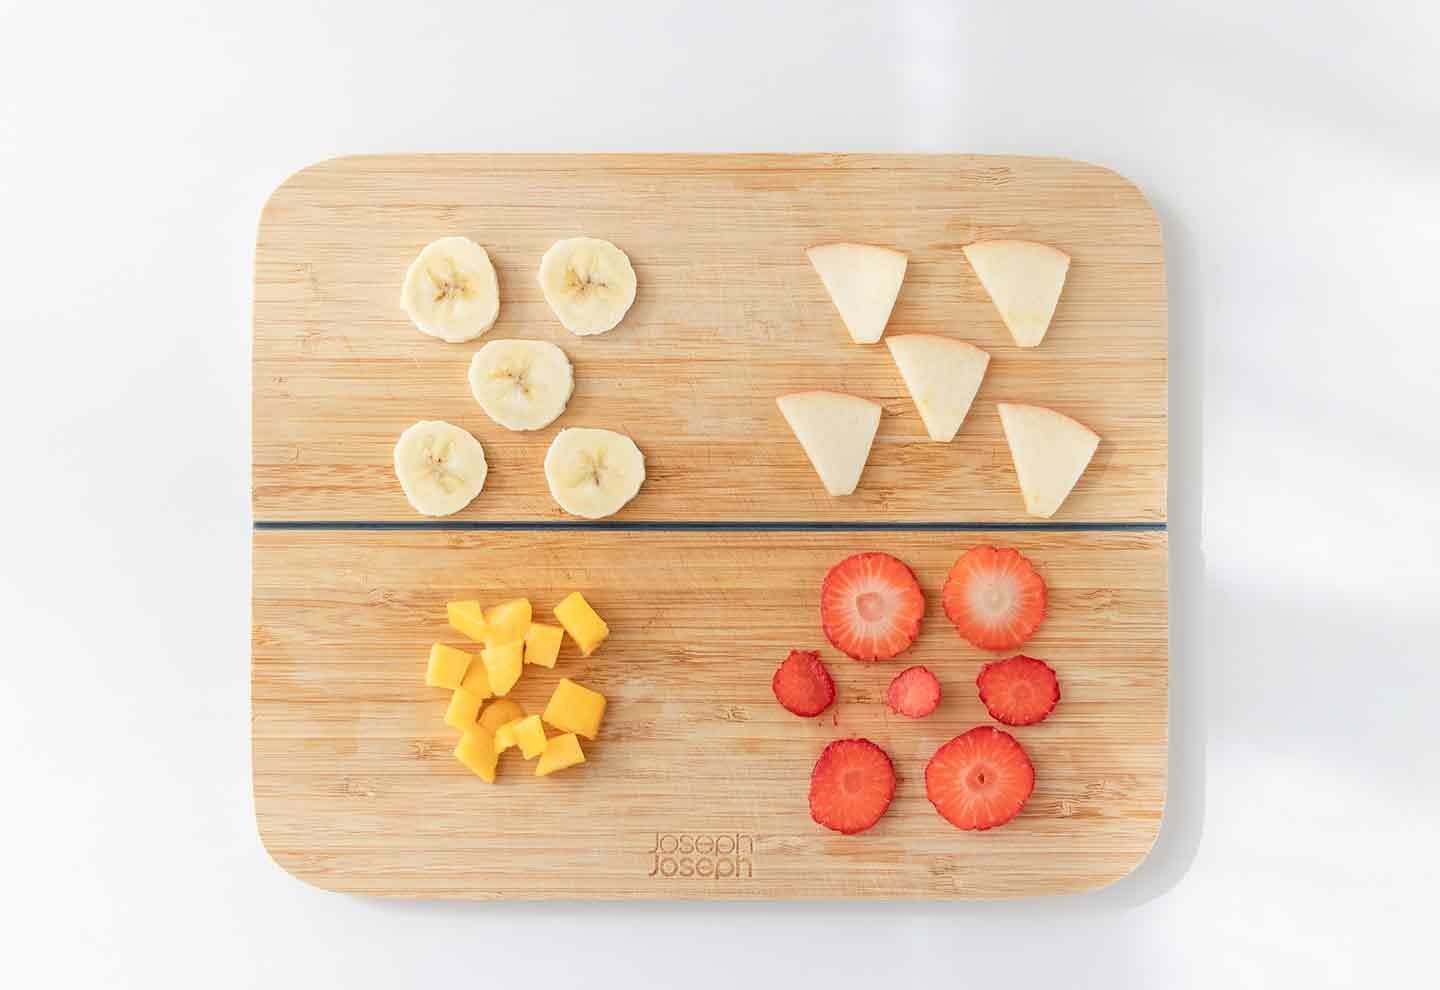 バナナ、りんご、いちご、冷凍マンゴーをカットする